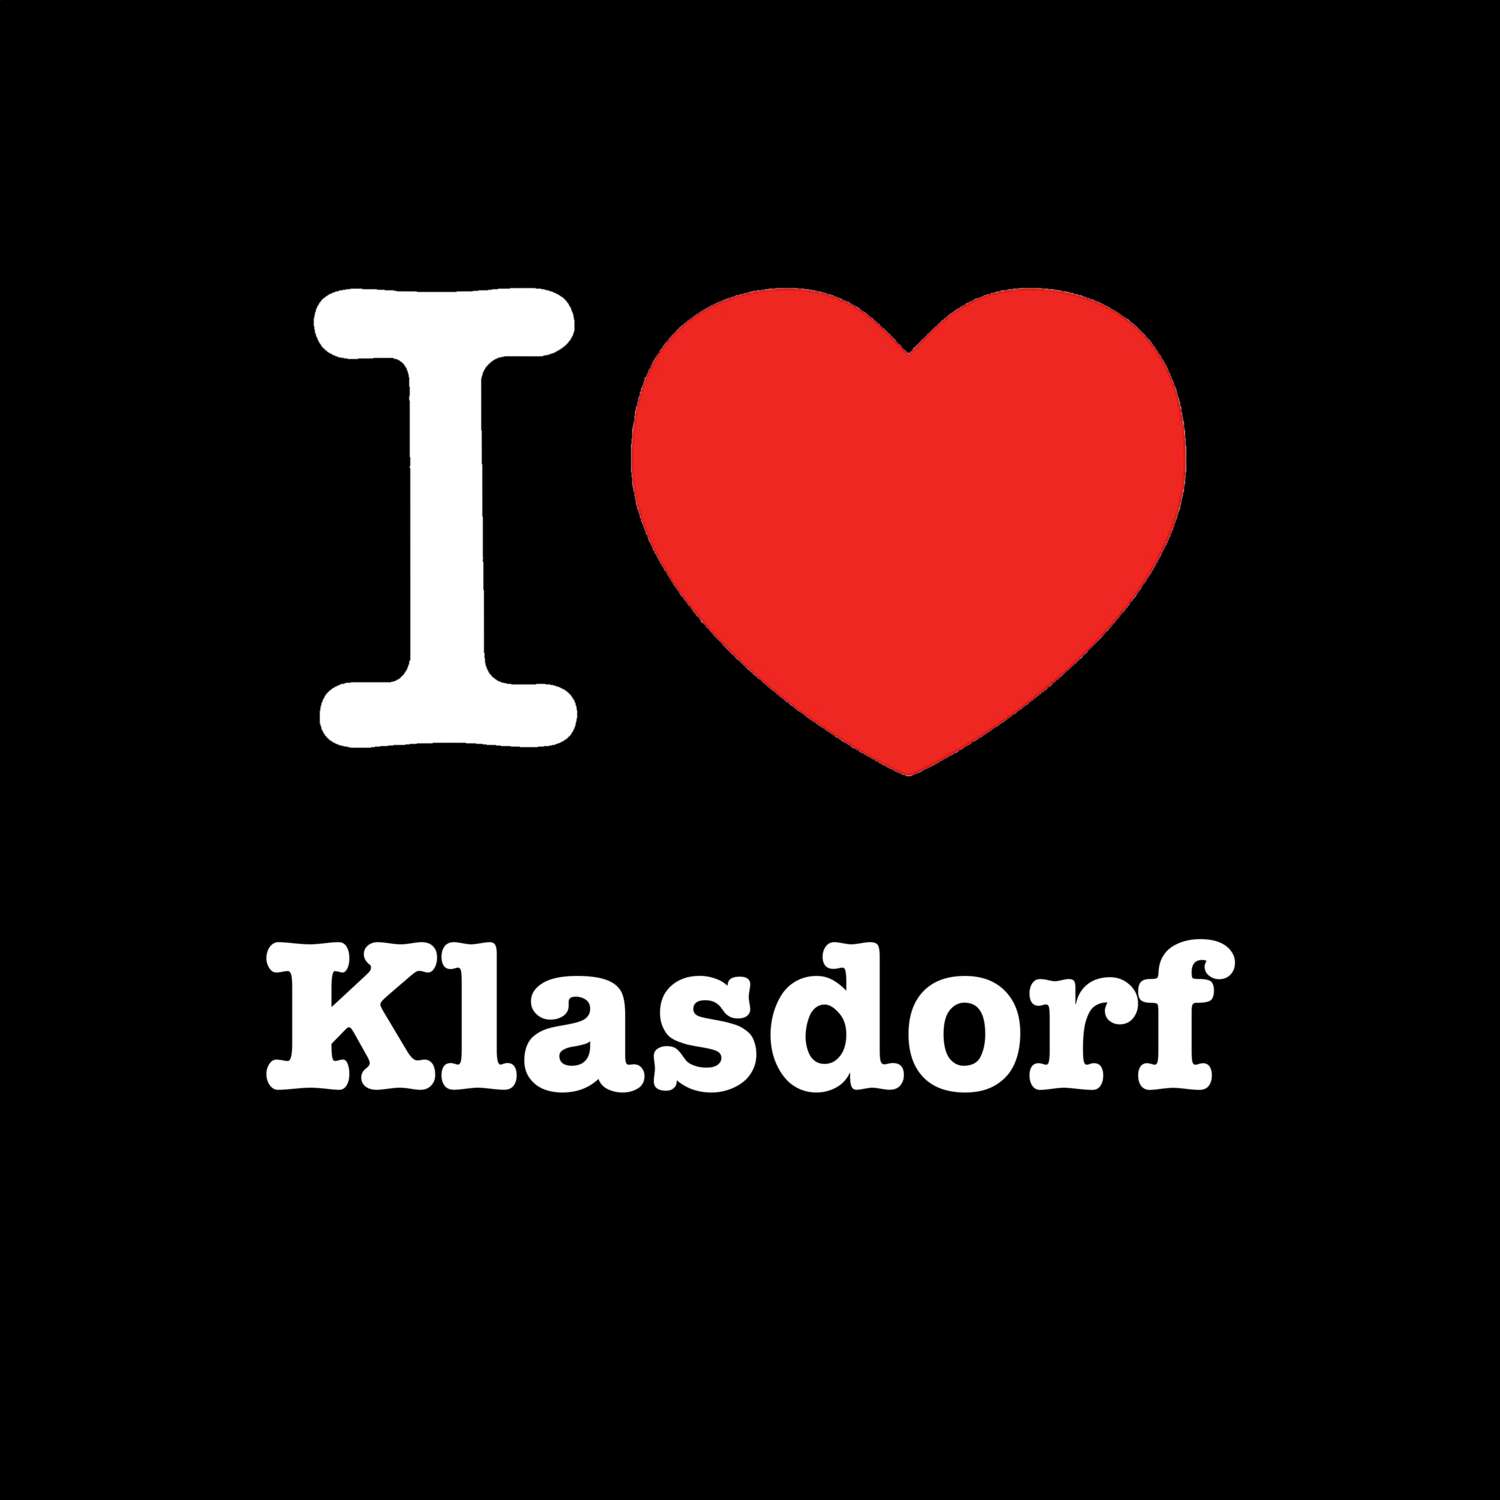 Klasdorf T-Shirt »I love«